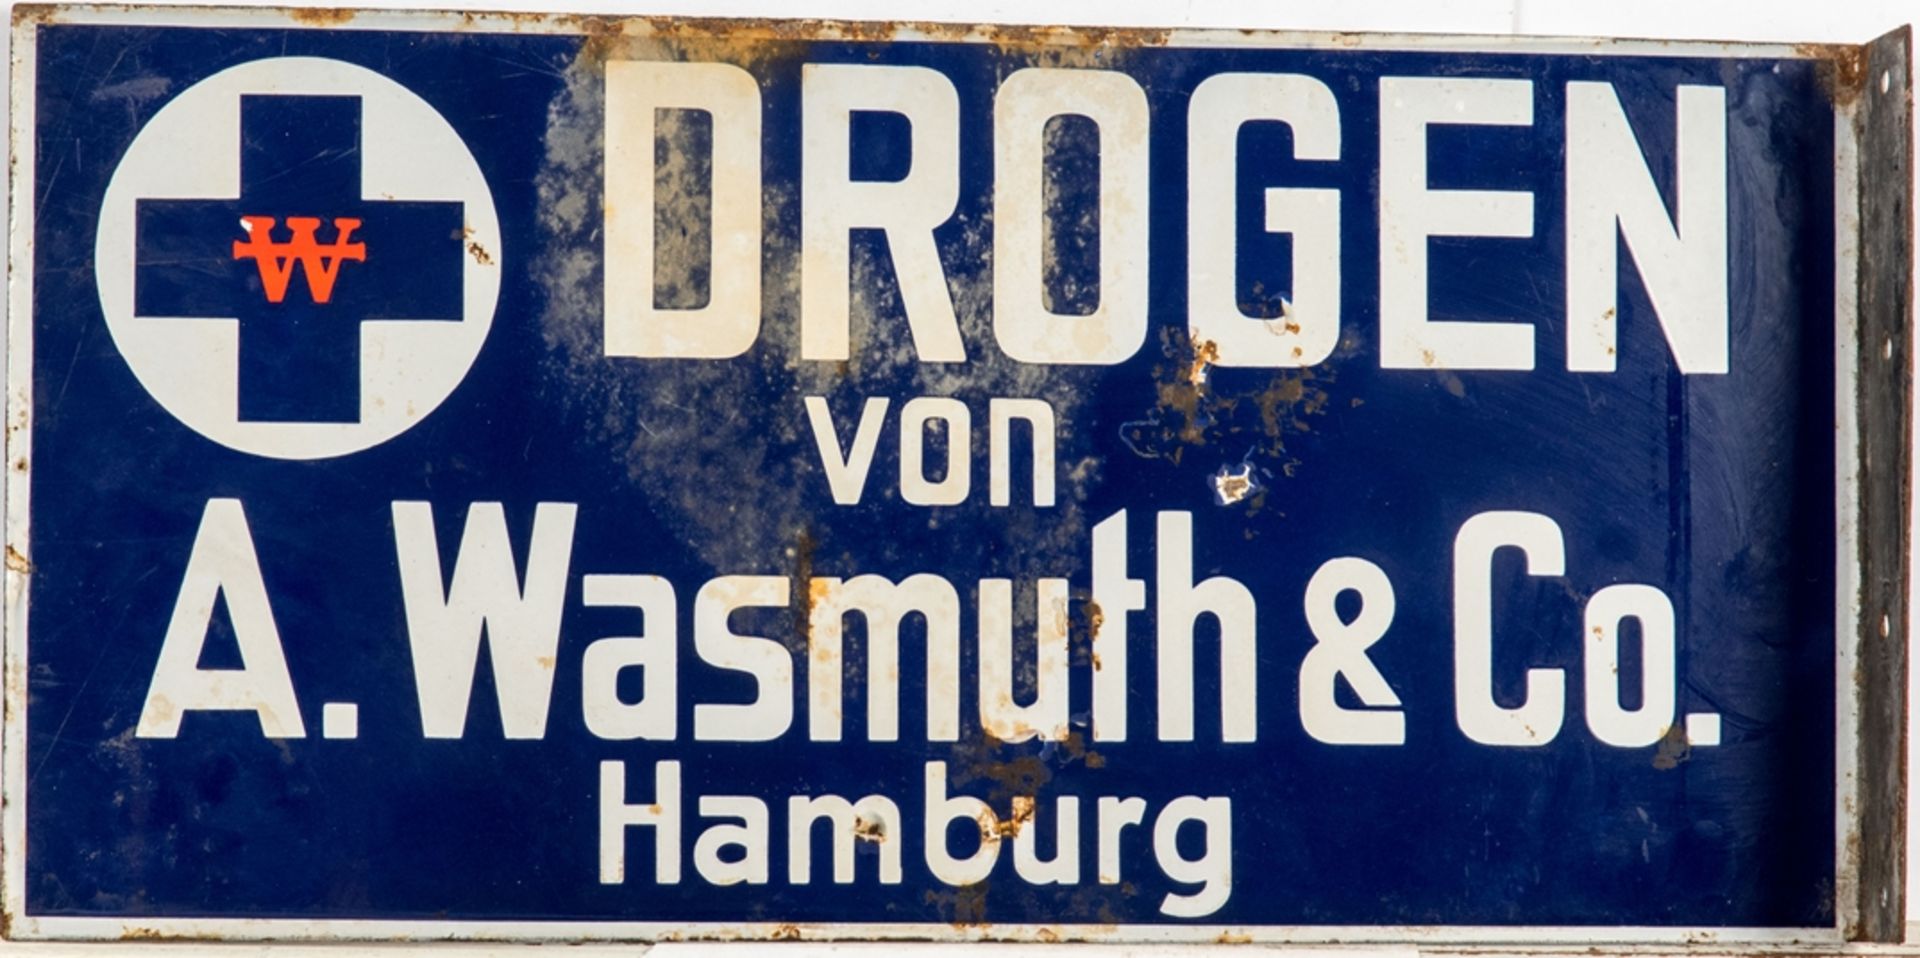 Werbeschild DROGEN von A. Wasmuth & Co., Hamburg - Bild 2 aus 2